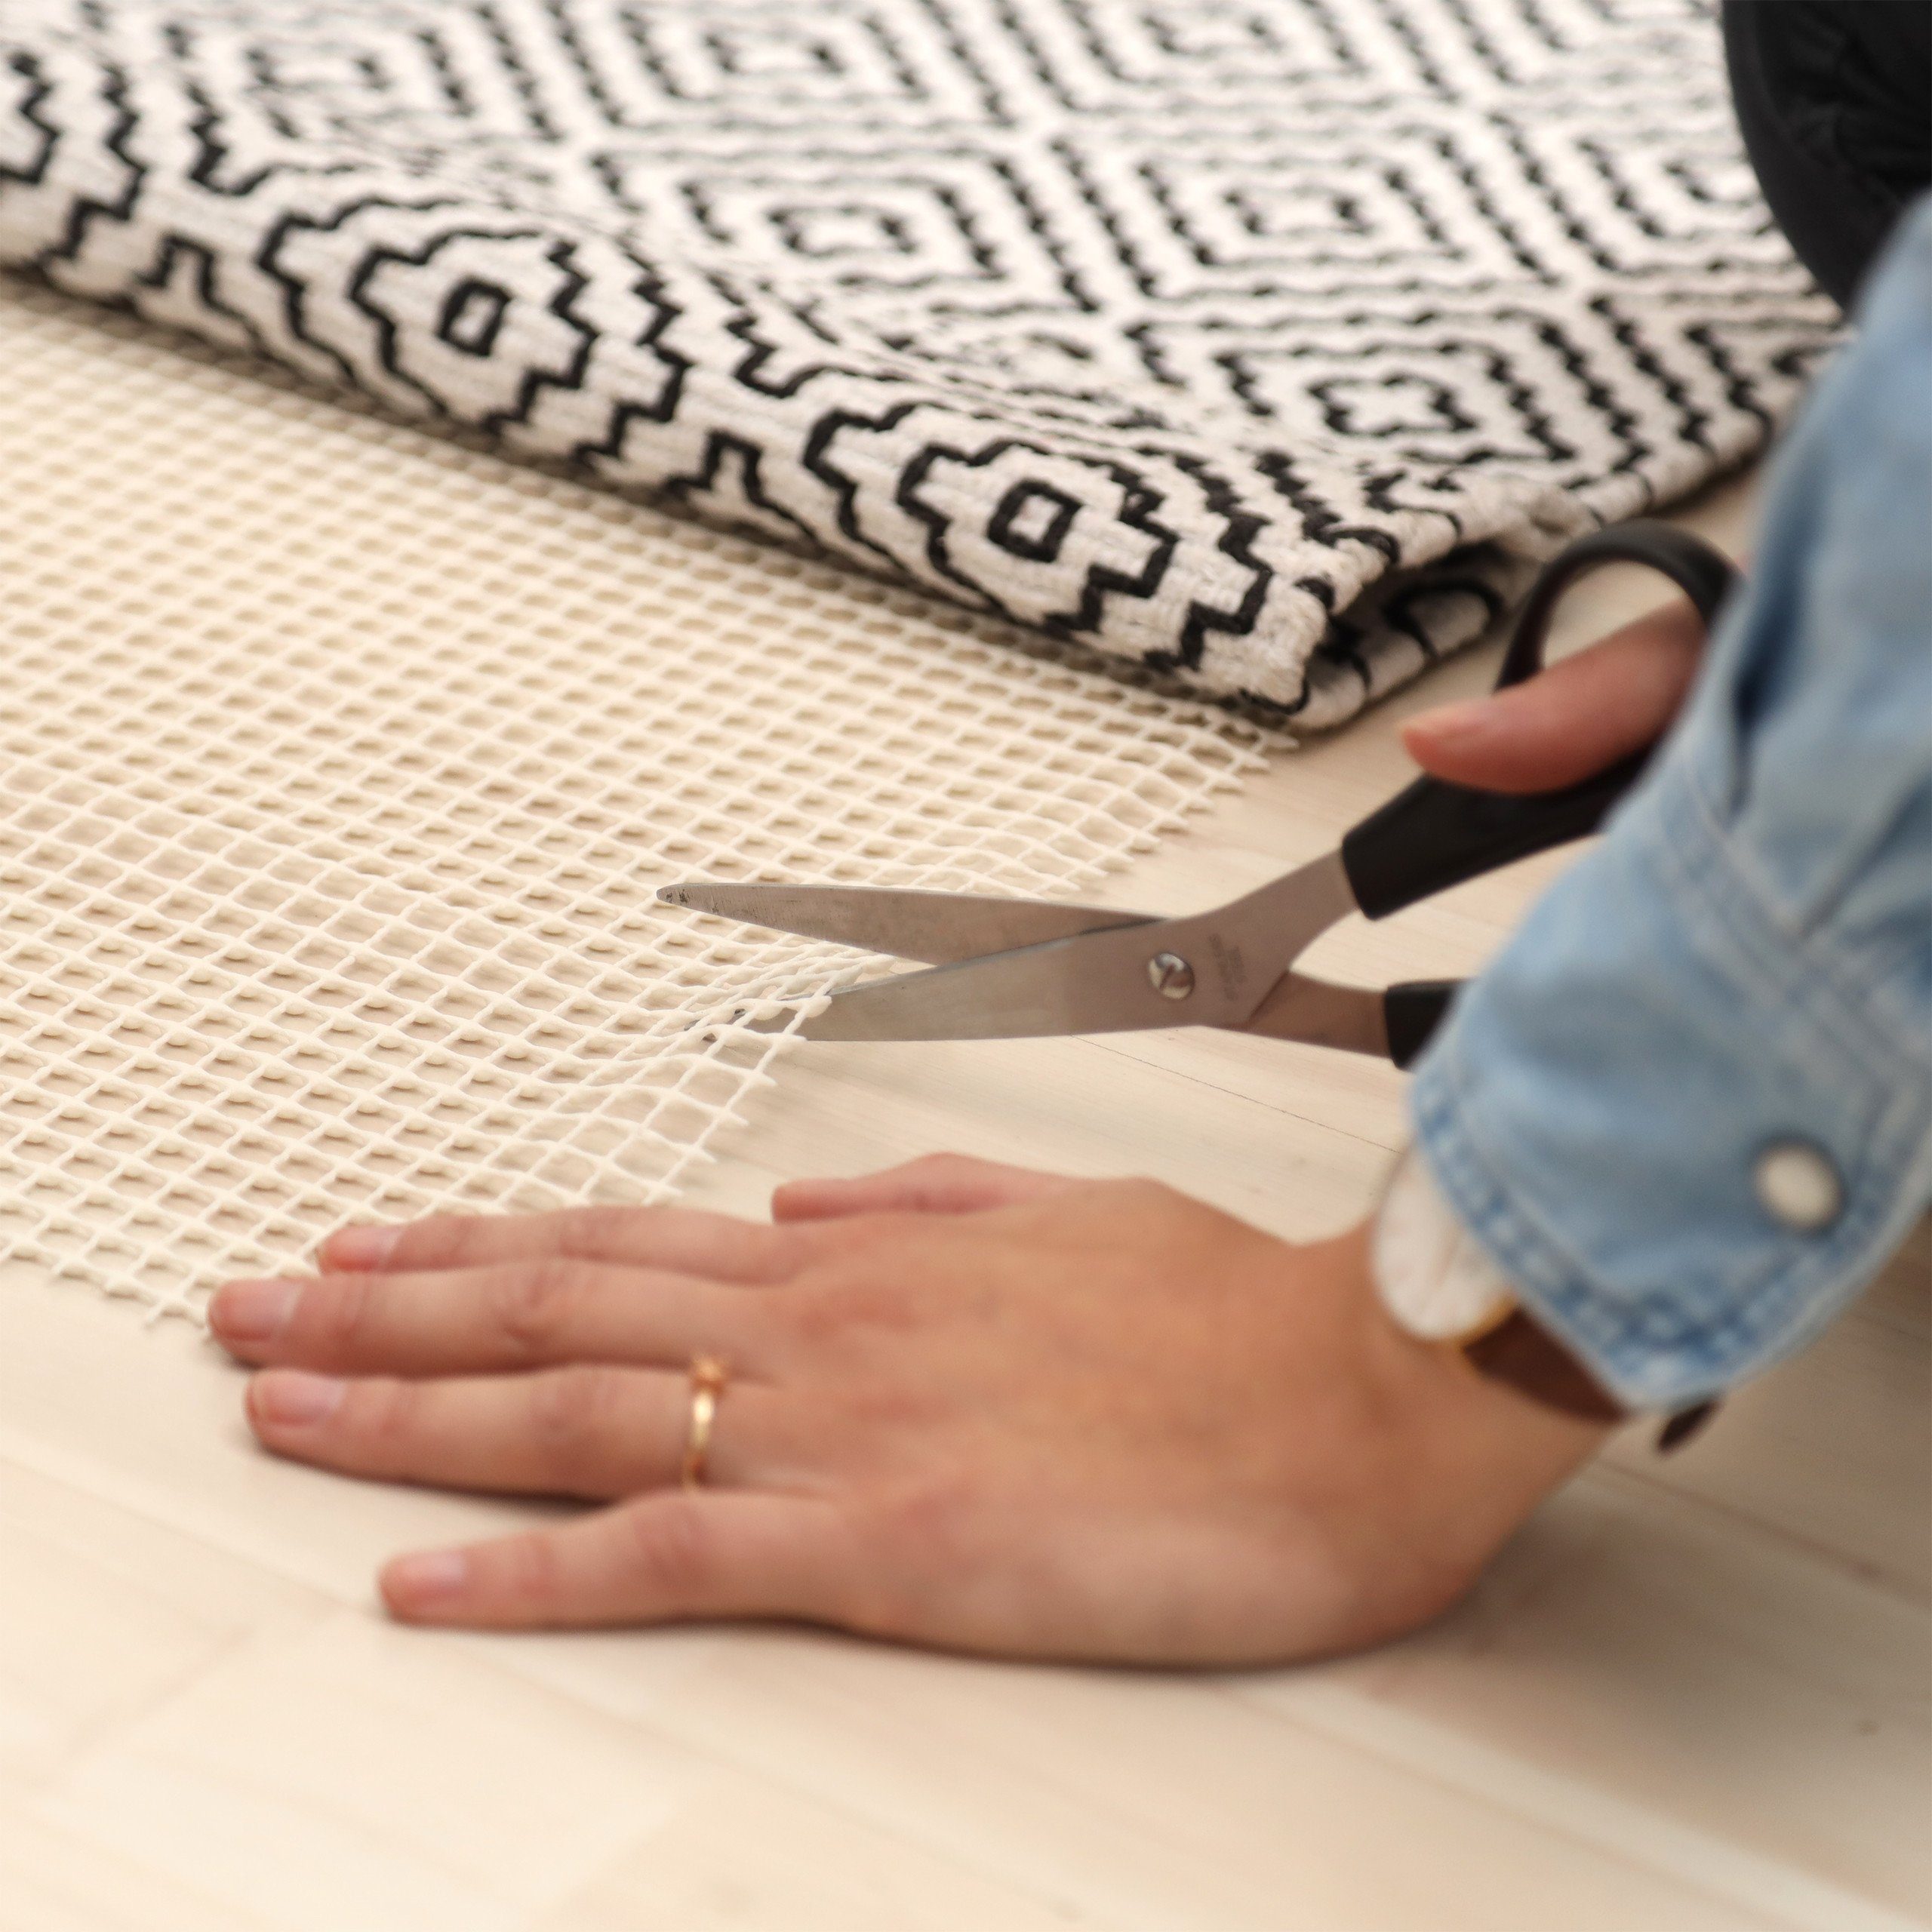 casa pura Teppich Rutsch Stopp: Teppichunterlage rutschfest | Anti-Rutsch  Matte für Teppiche, Läufer UVM. | einfach zuschneidbar | Reach